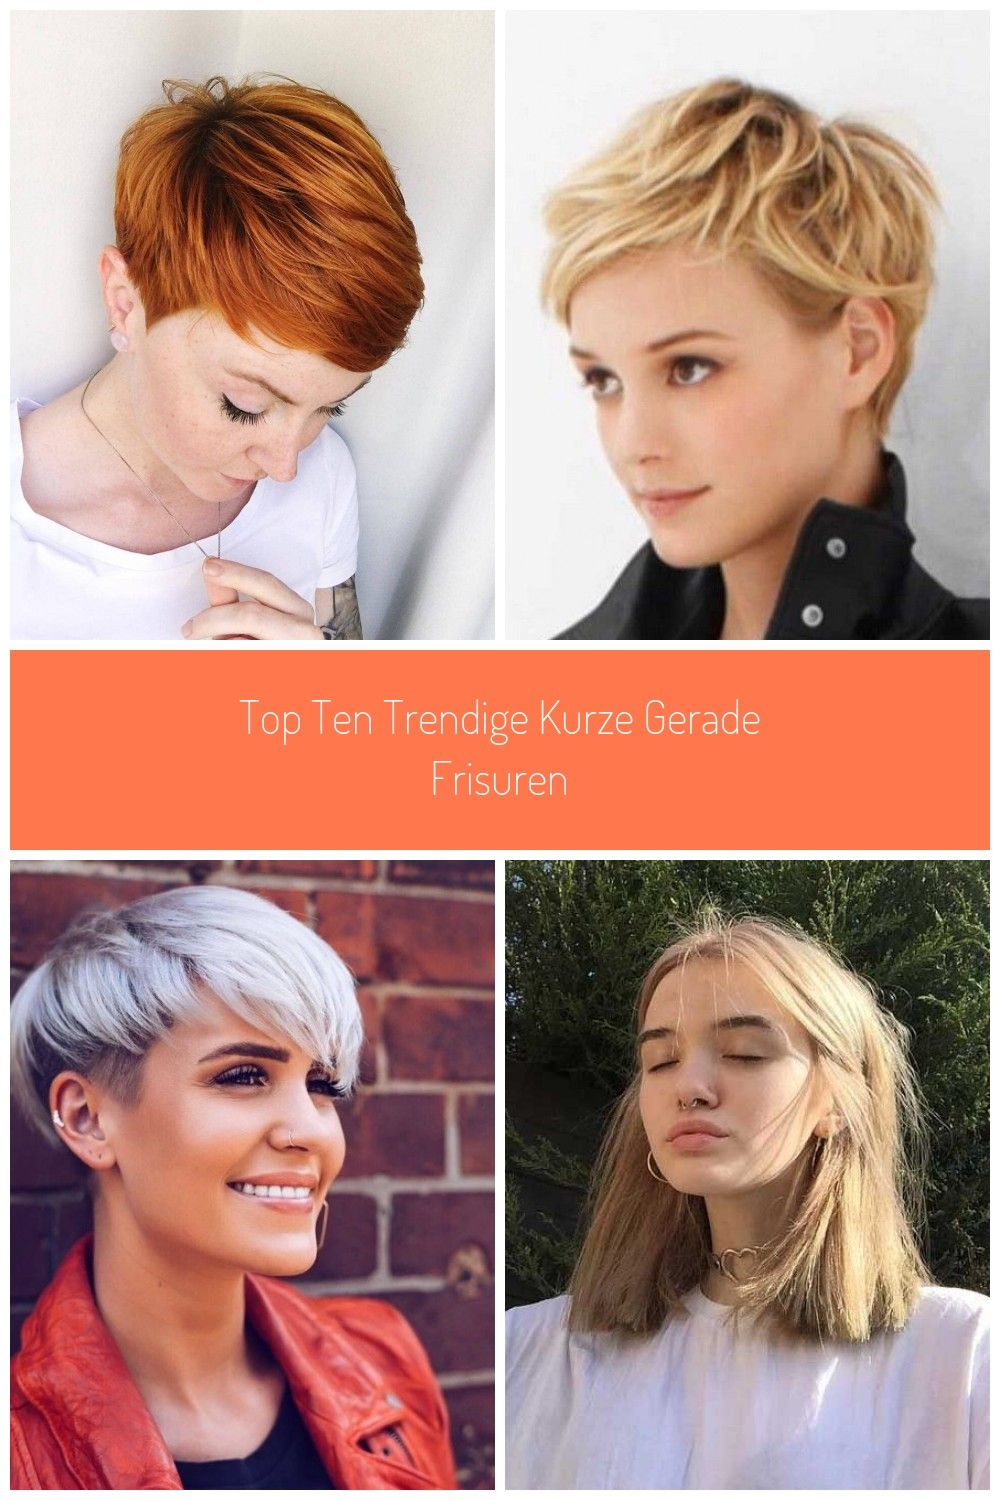 Top Ten Trendige kurze gerade Frisuren  #frisuren #gerade #kurze #trendige #Kurz...